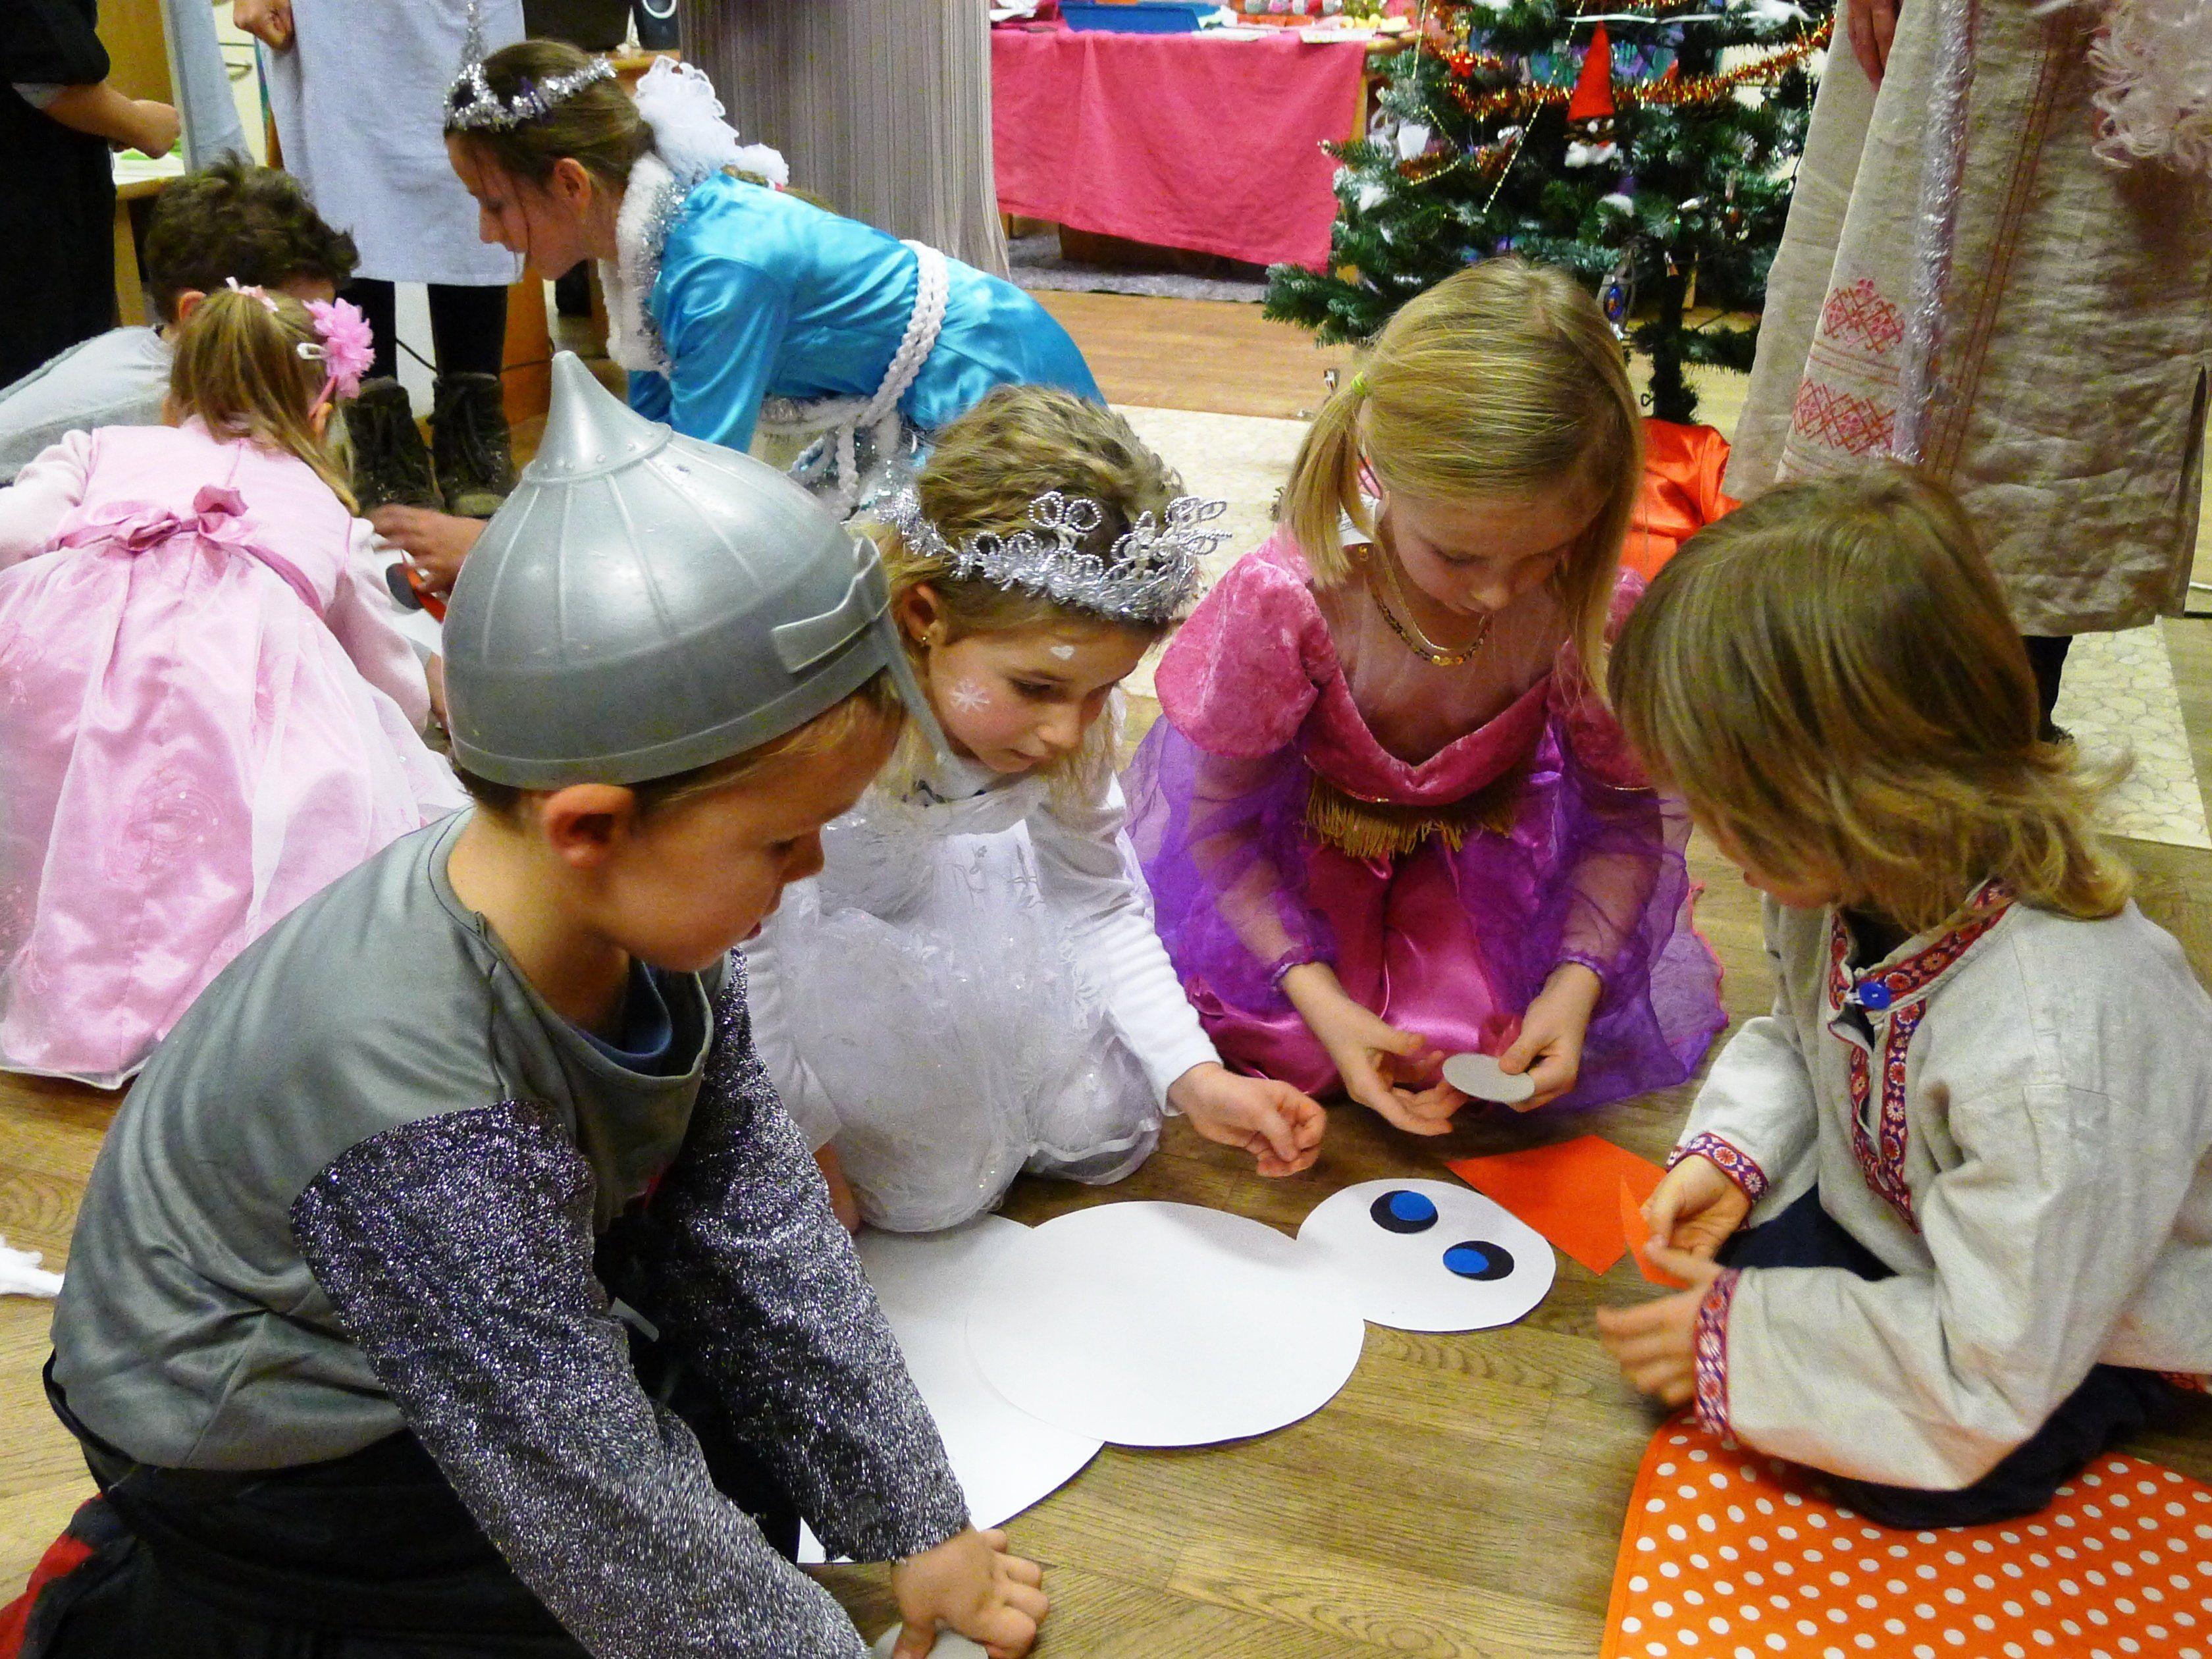 Die Kinder aus russisch-deutschsprachigen Familien feiern ihre Bräuche spielerisch.